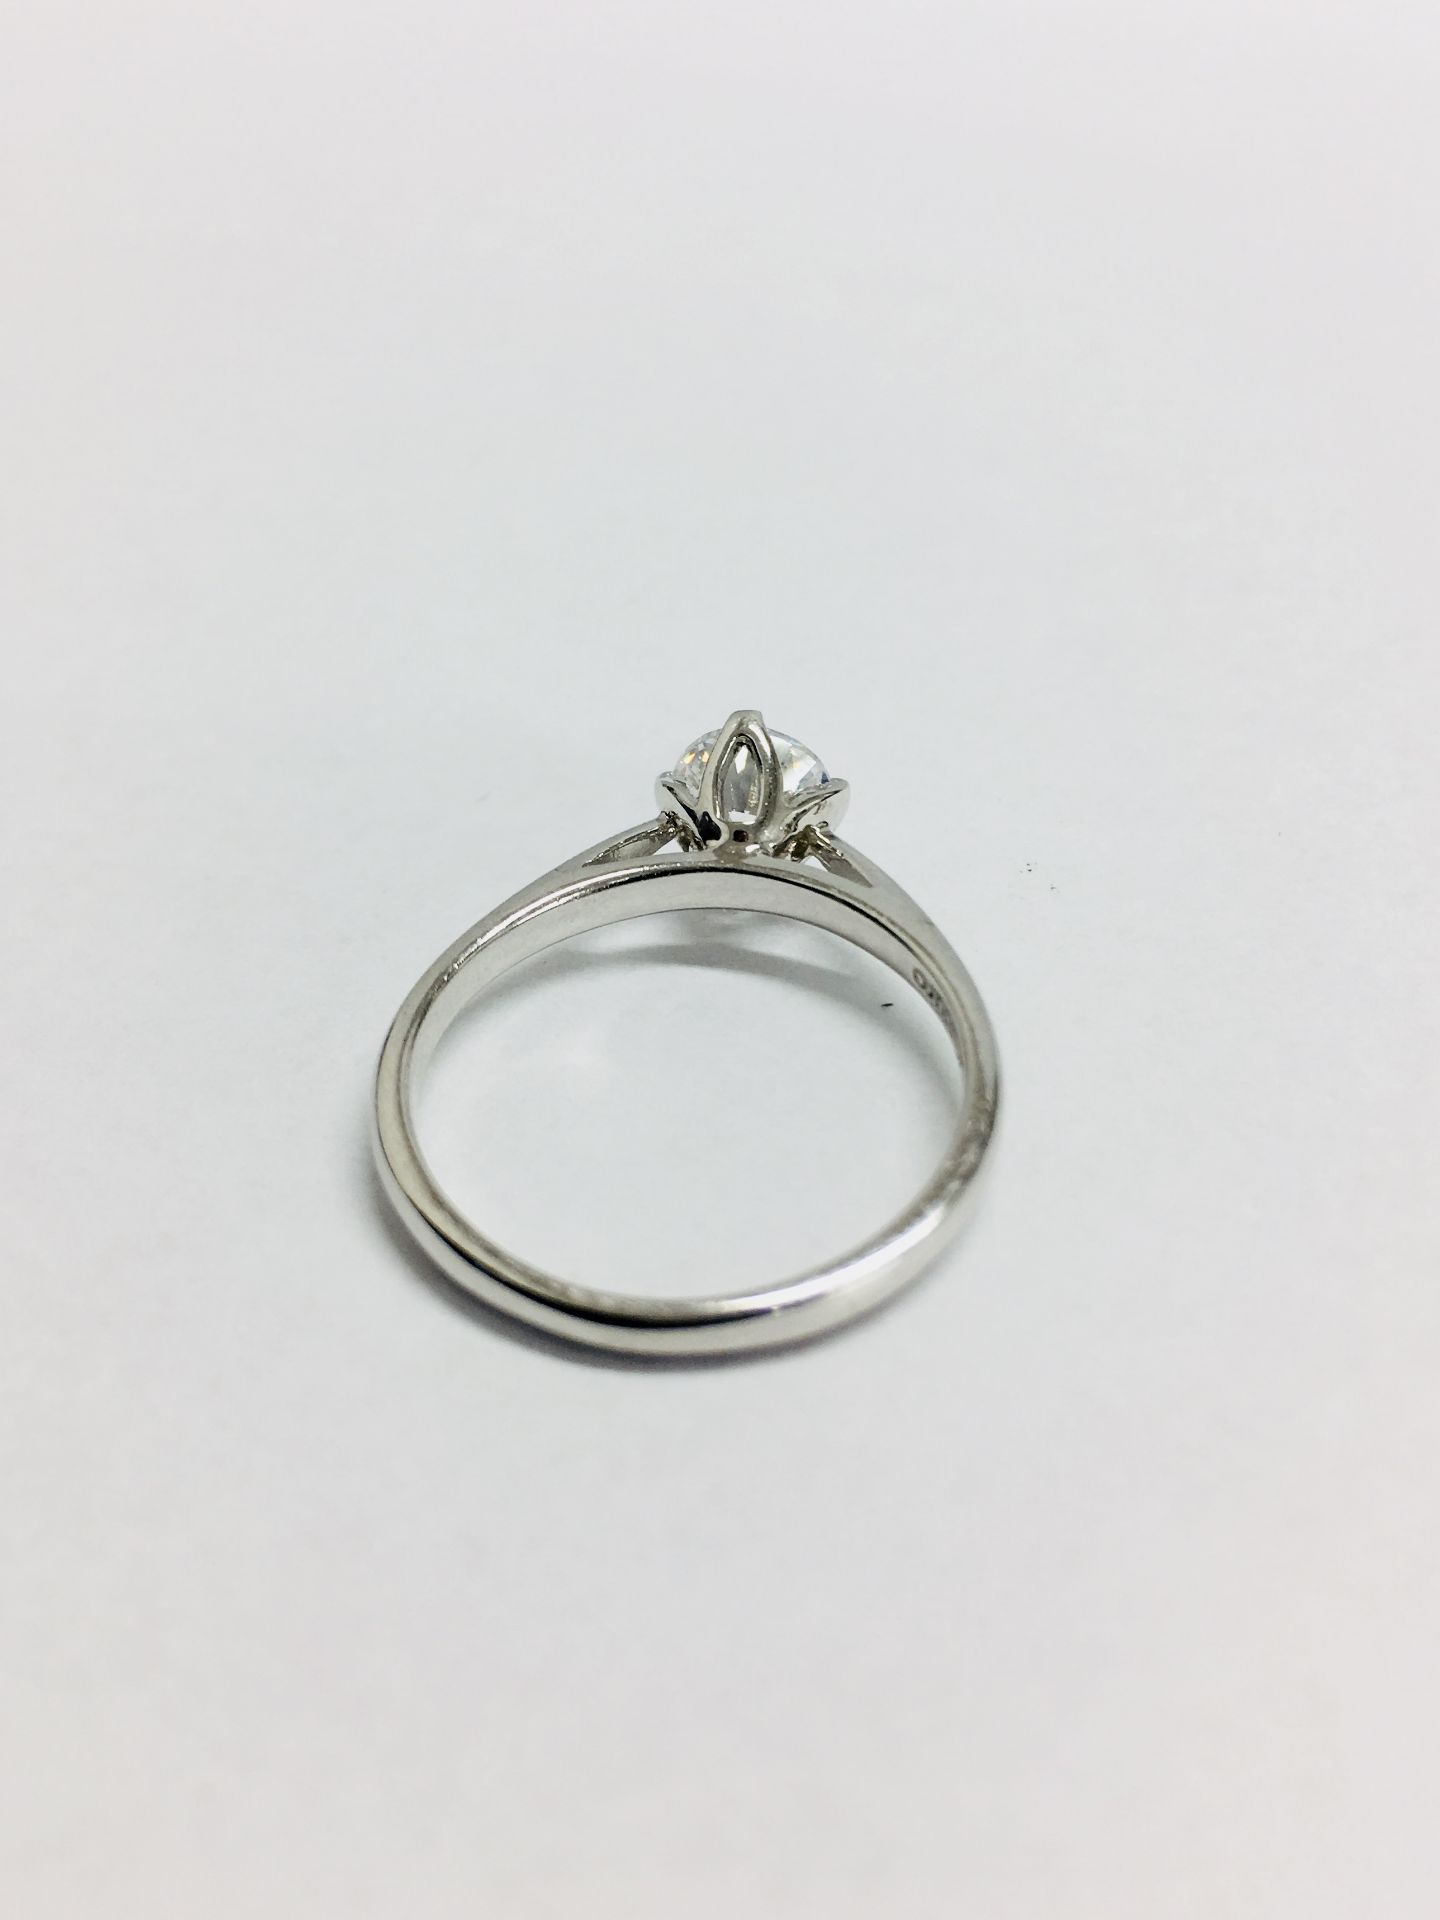 Platinum diamond solitaire ring,0.50ct brillliant cut diamond h colour vs clarity(clarity enhanced), - Bild 2 aus 6